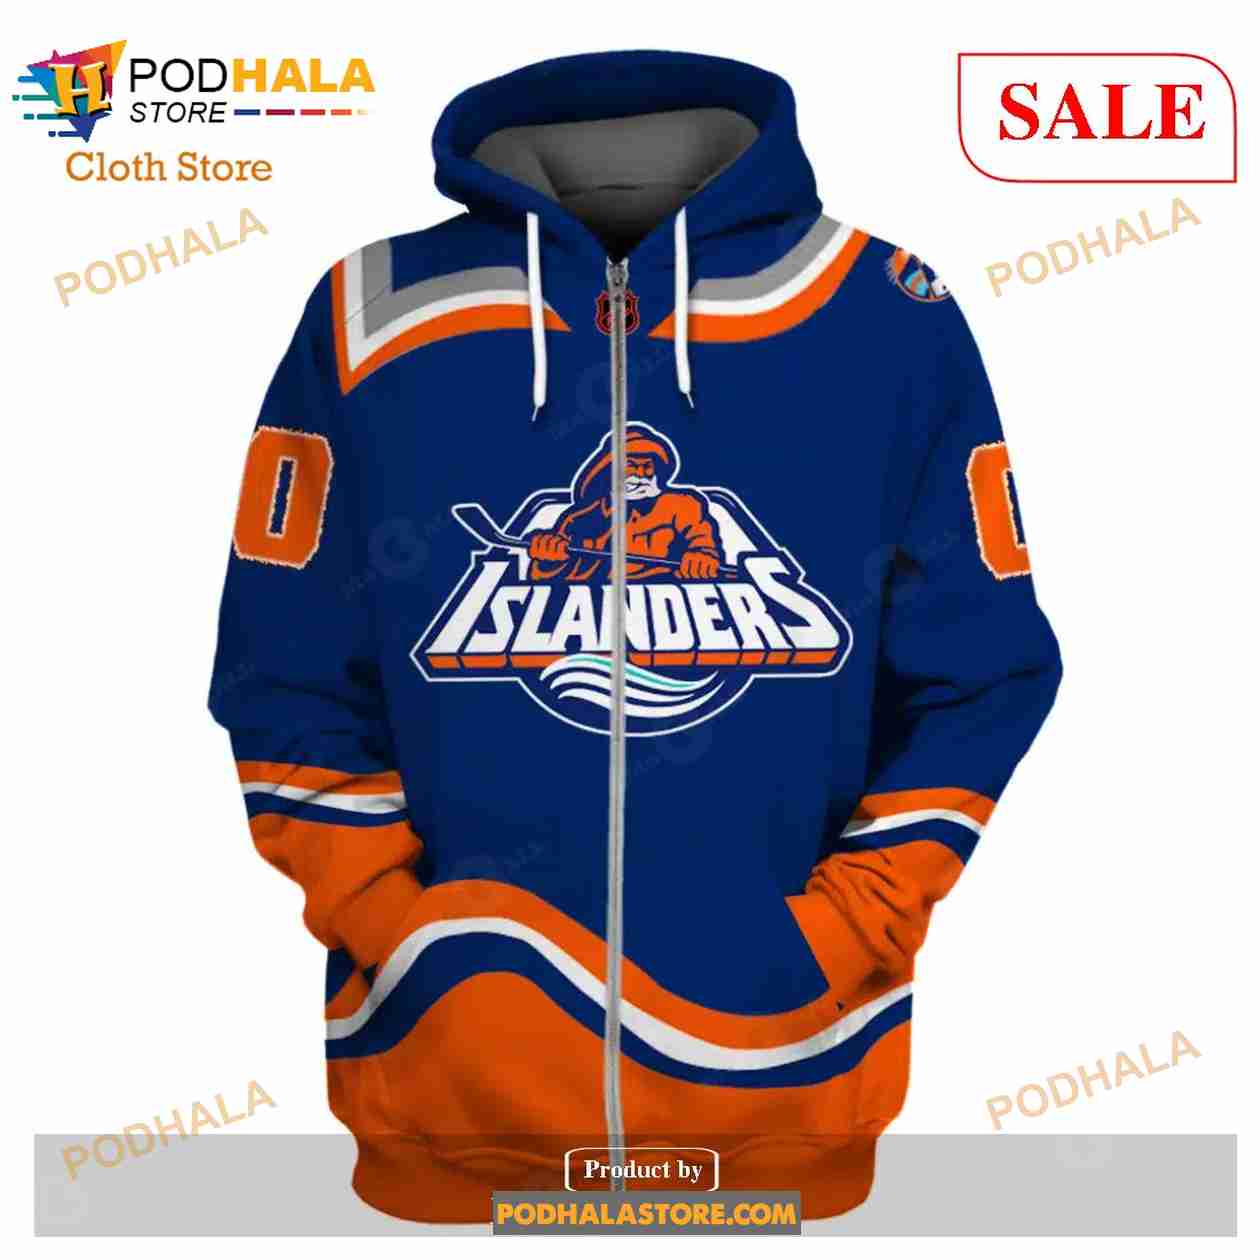 Vintage 90s NHL New York Islanders Sweatshirt